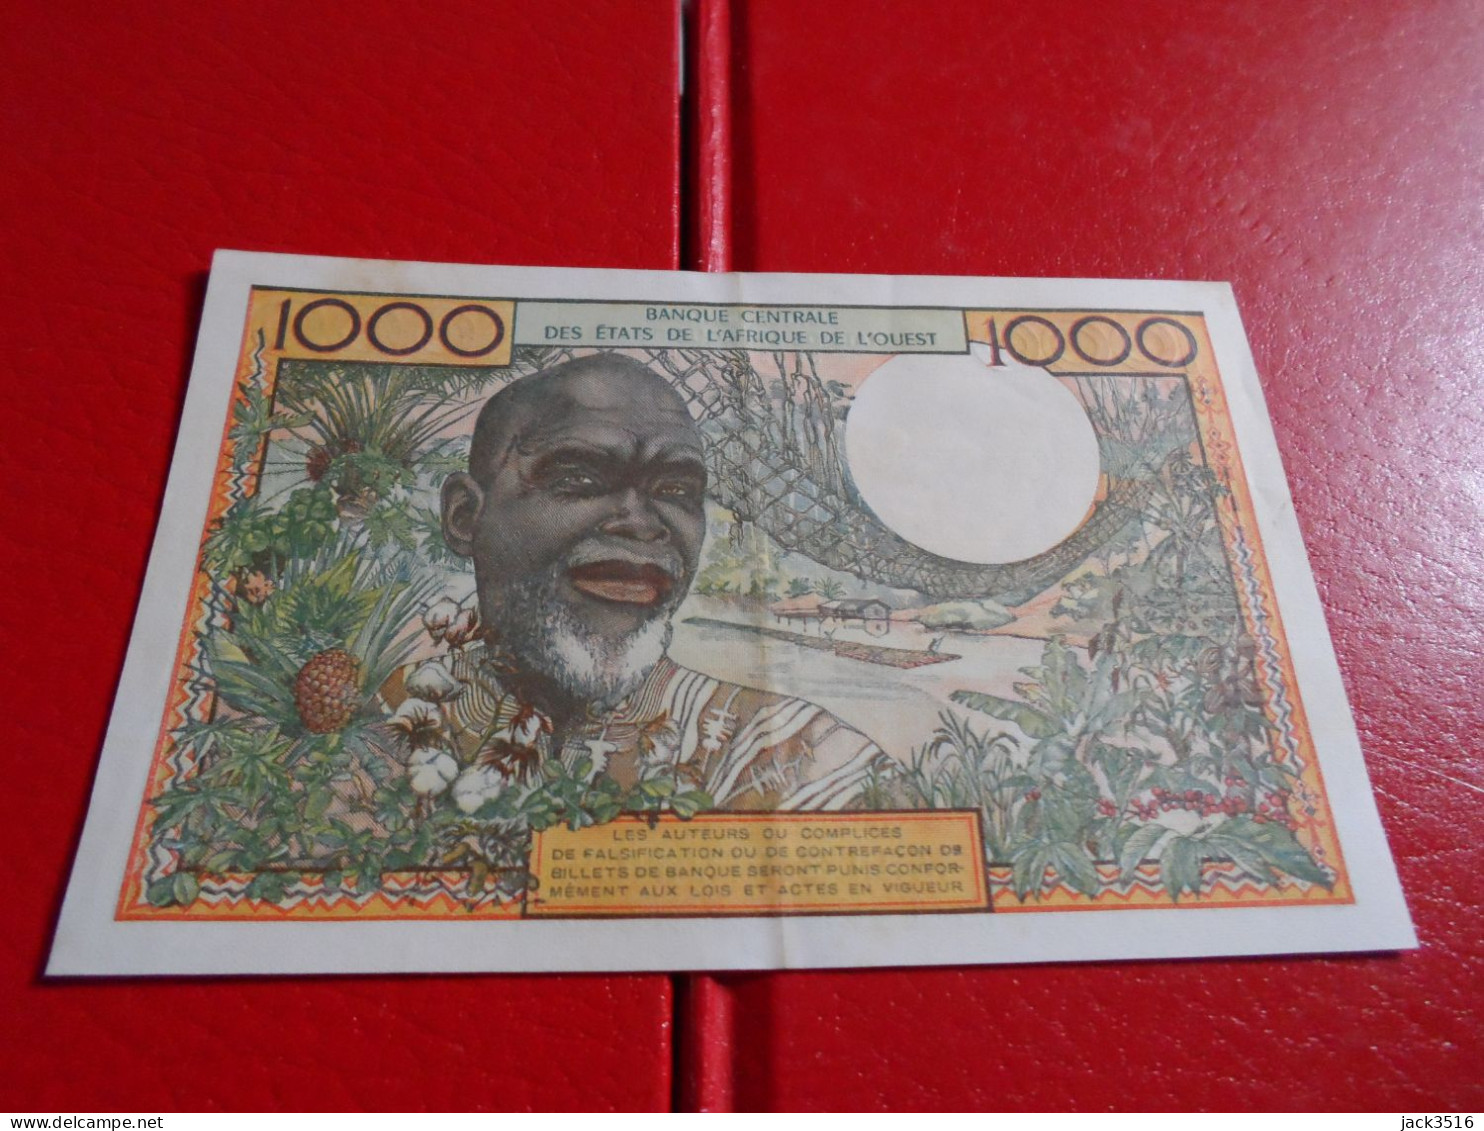 1000 Francs Côte D'ivoire 1965 Spl/au 02358 - Other - Africa